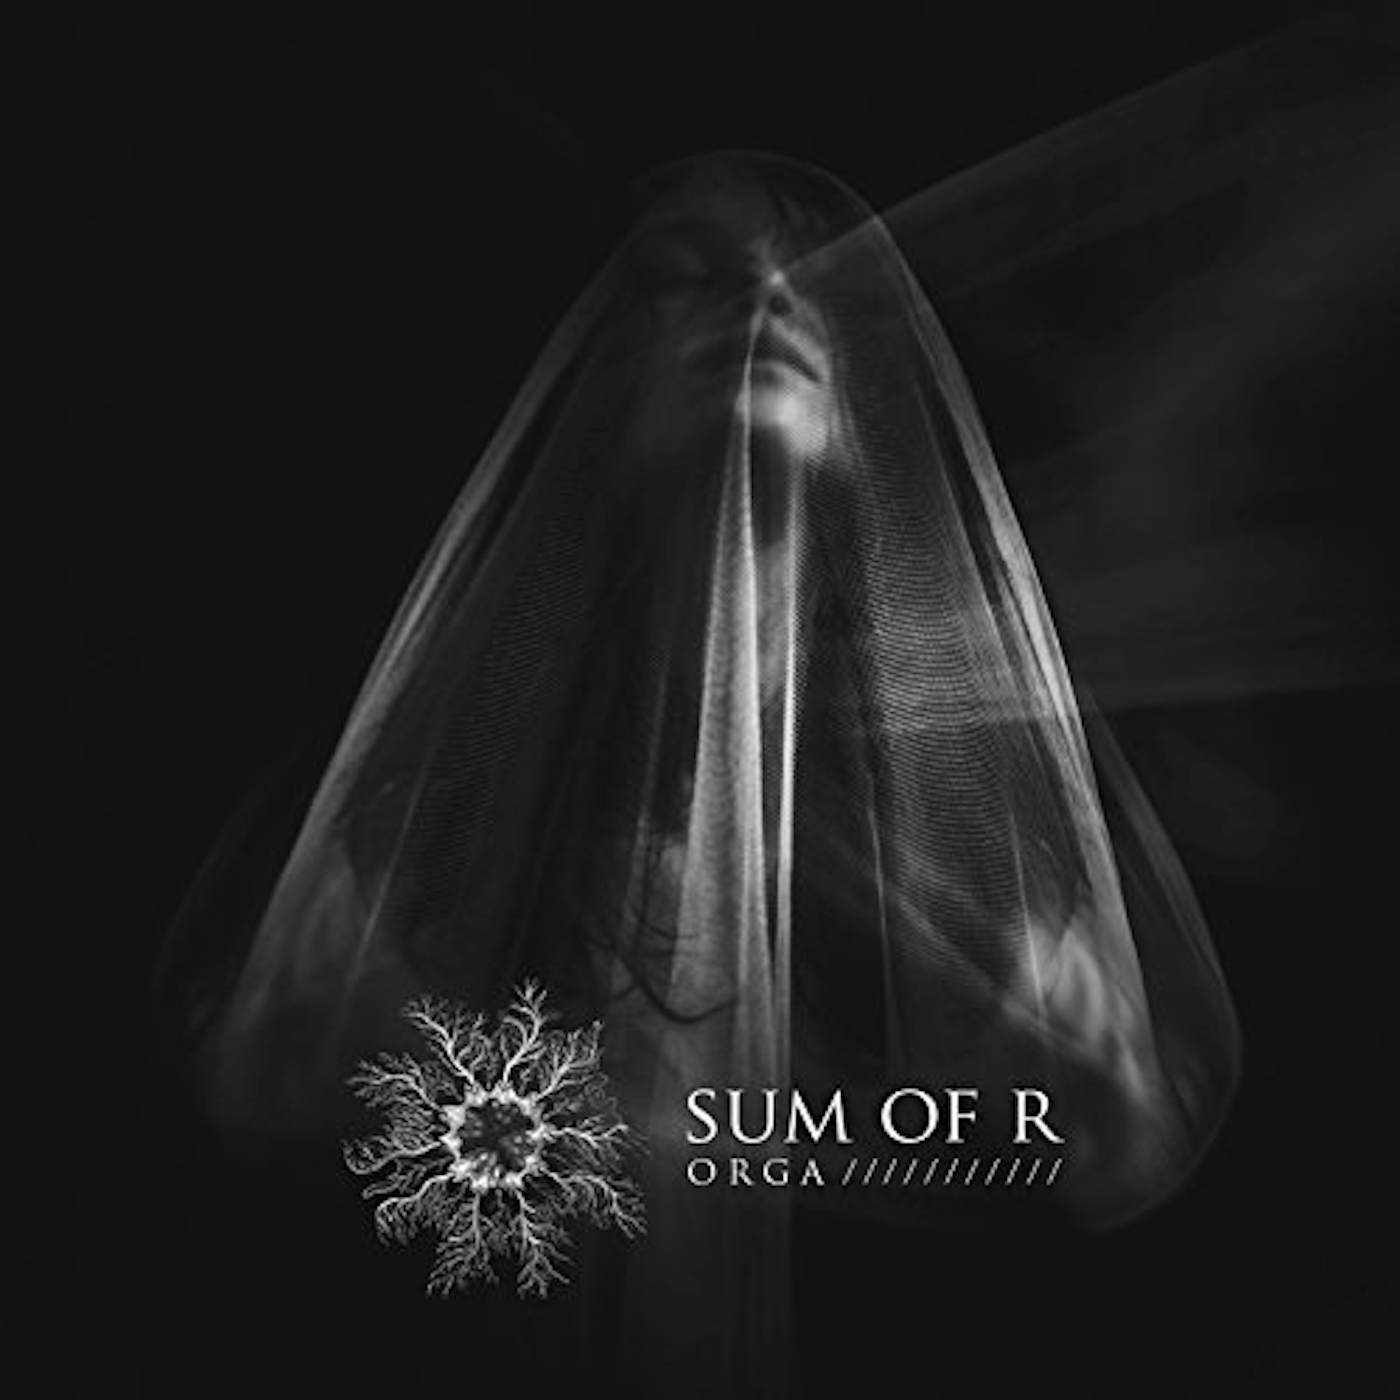 Sum of R Orga Vinyl Record